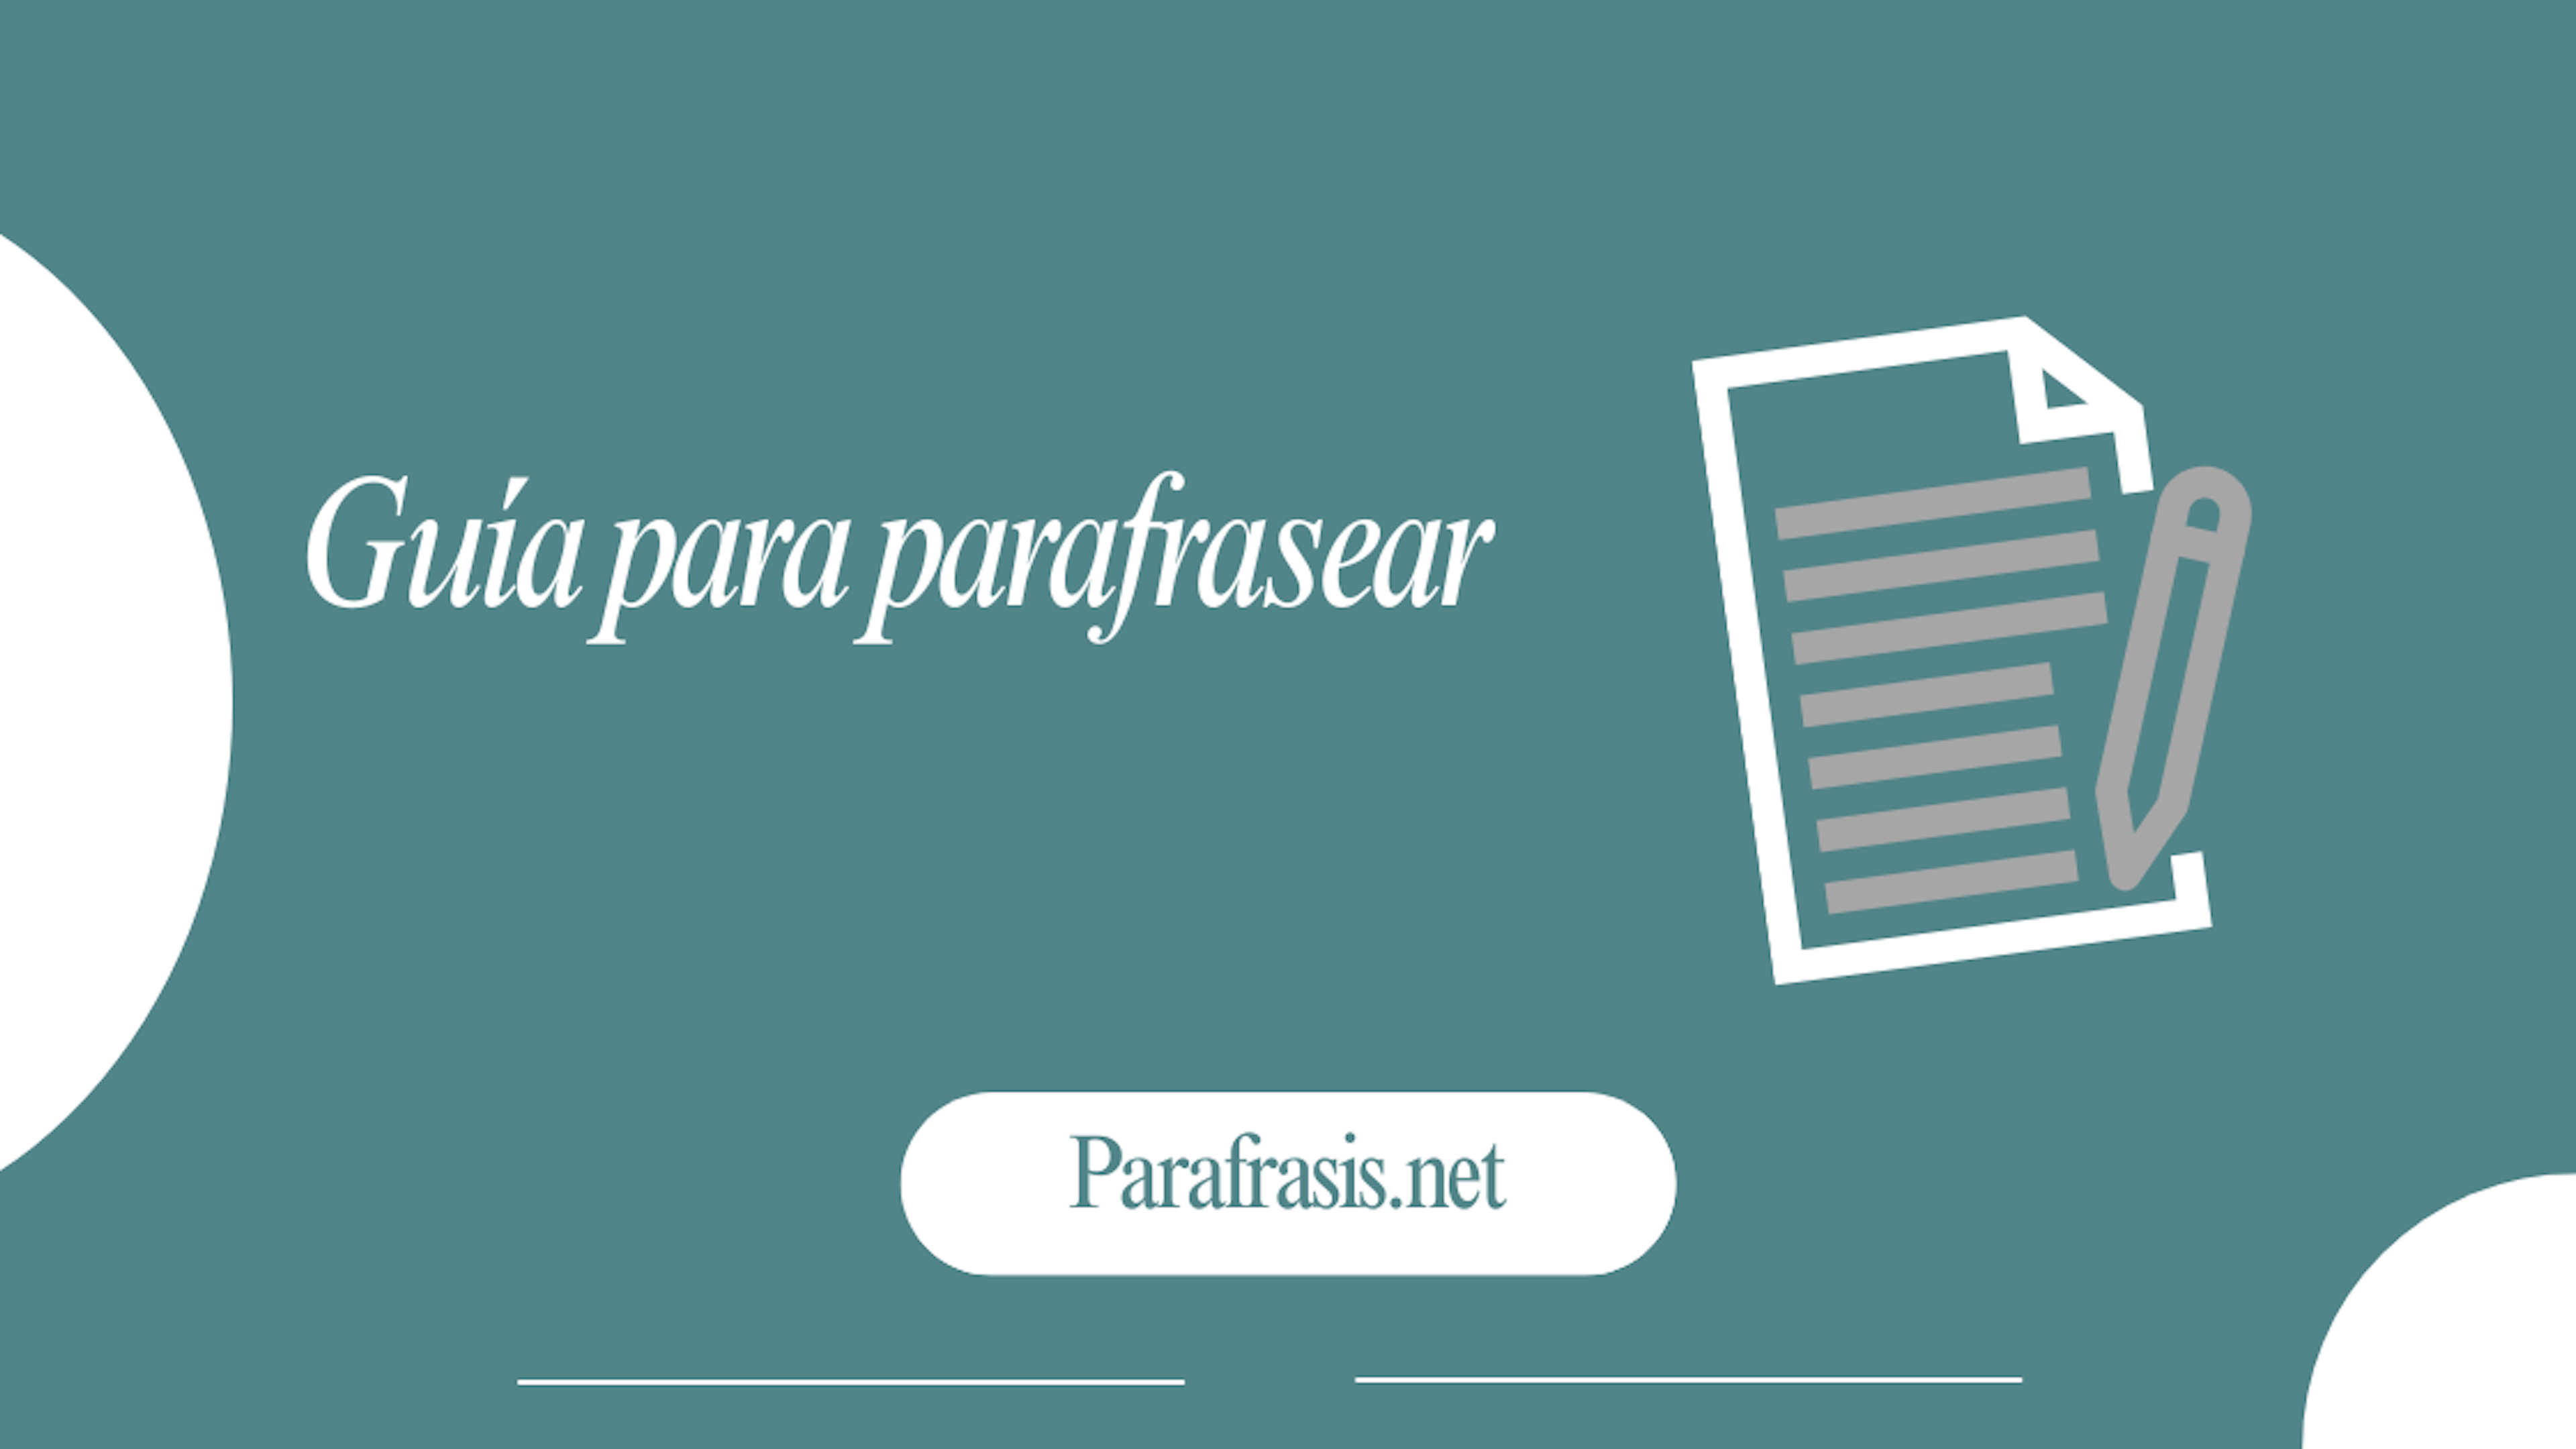 Guía de paráfrasis: manual y en línea para una escritura clara y original